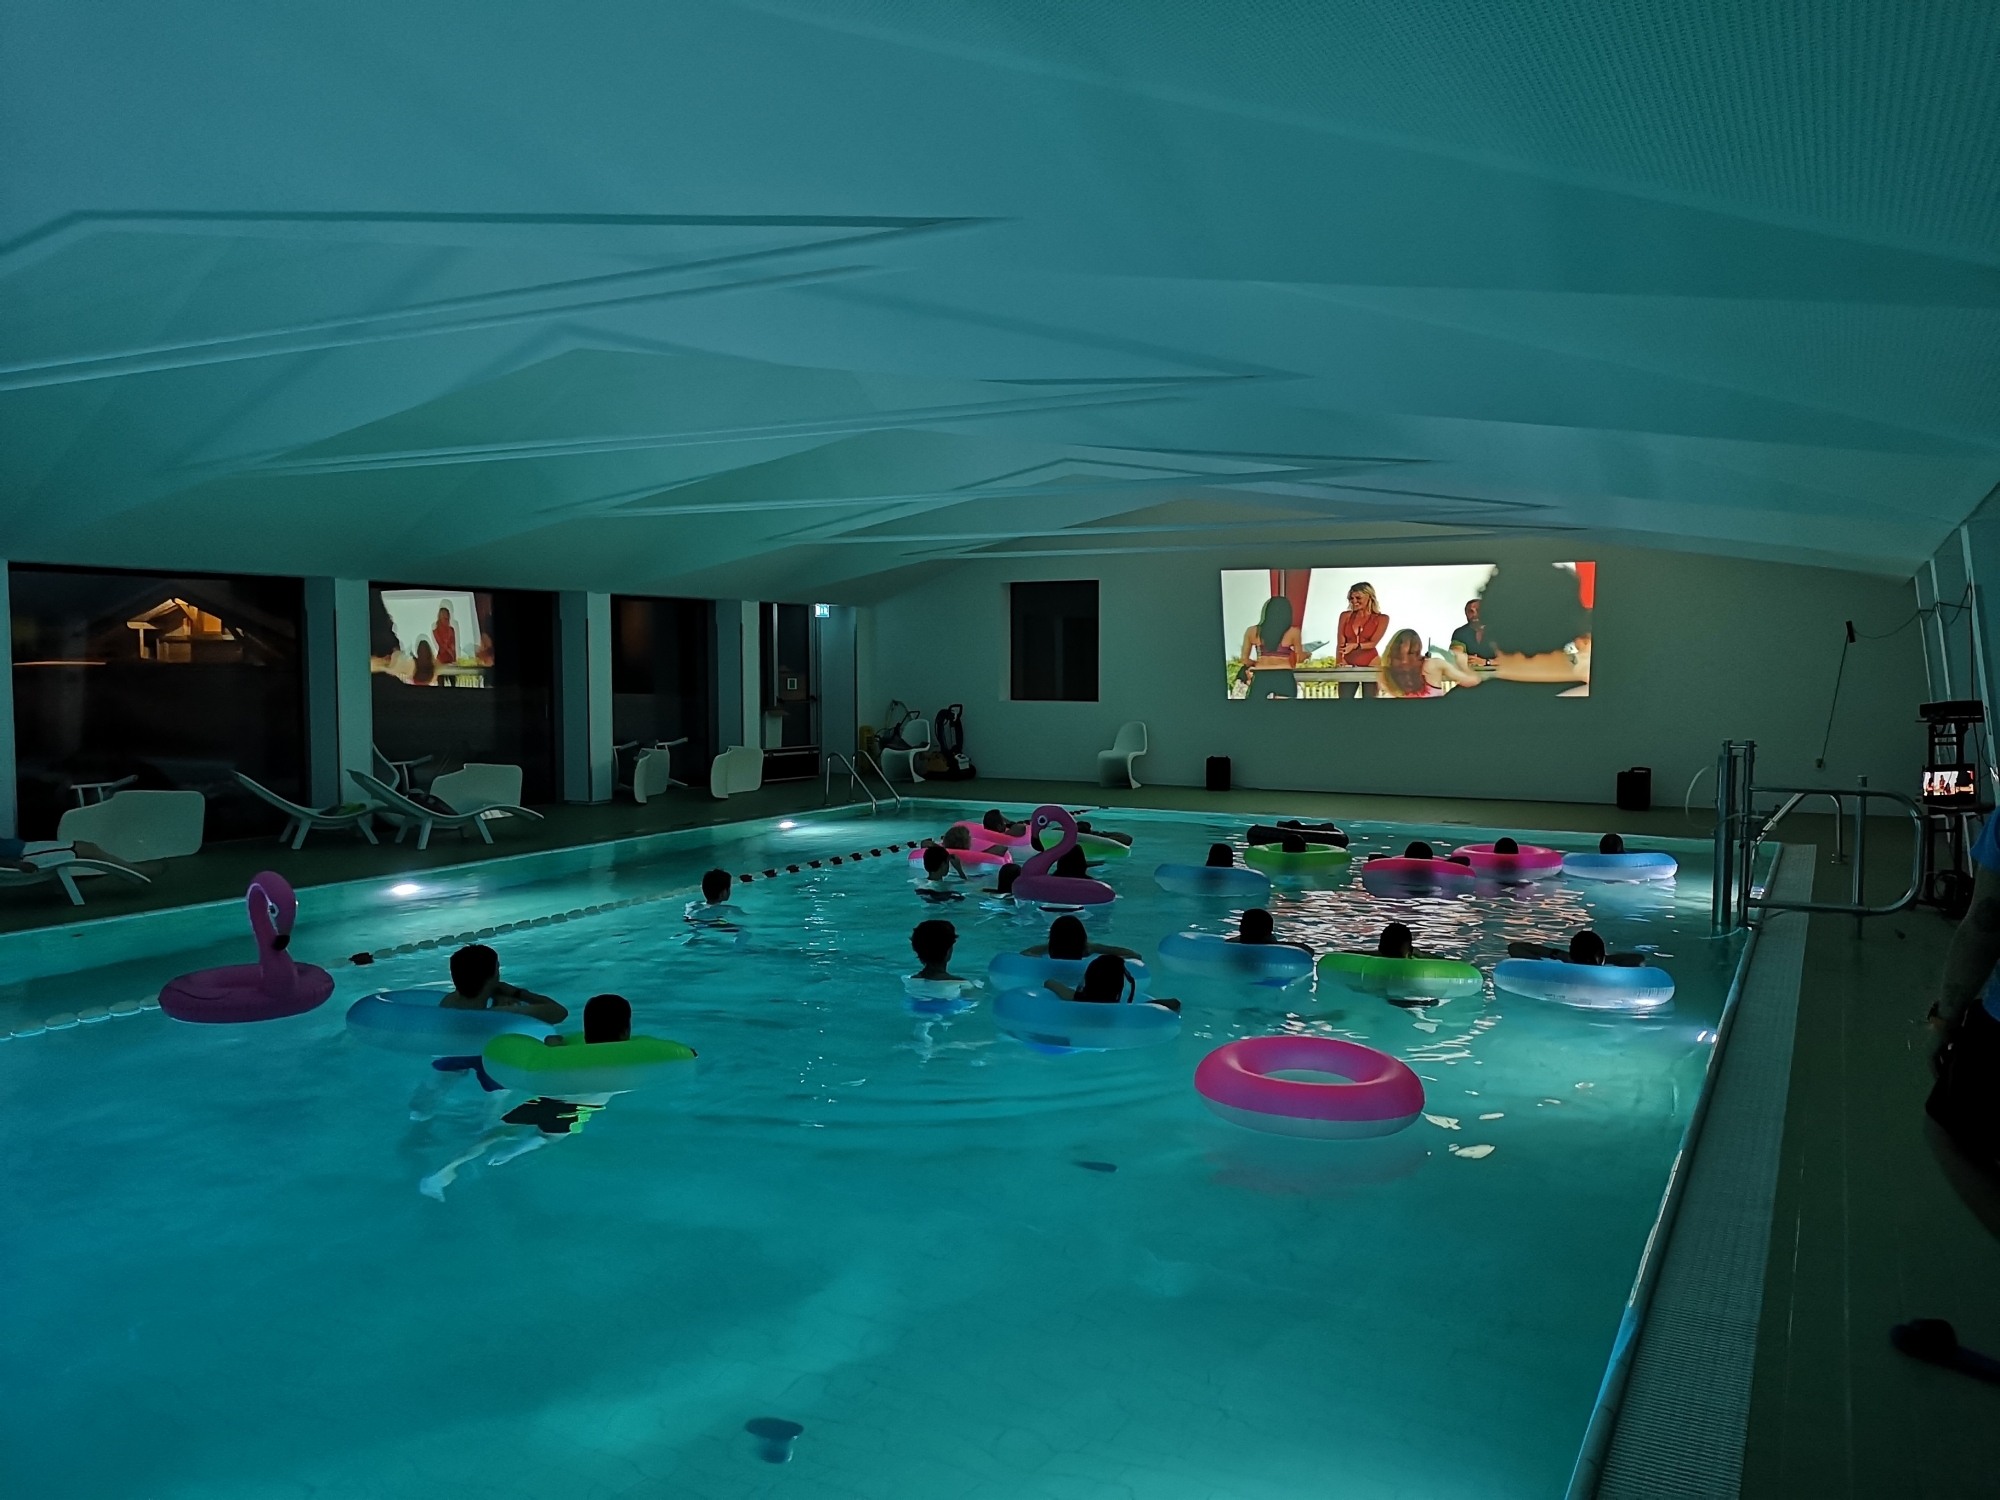 Les spectateurs s'installent dans le bassin face à l'écran, confortablement installés dans une bouée.